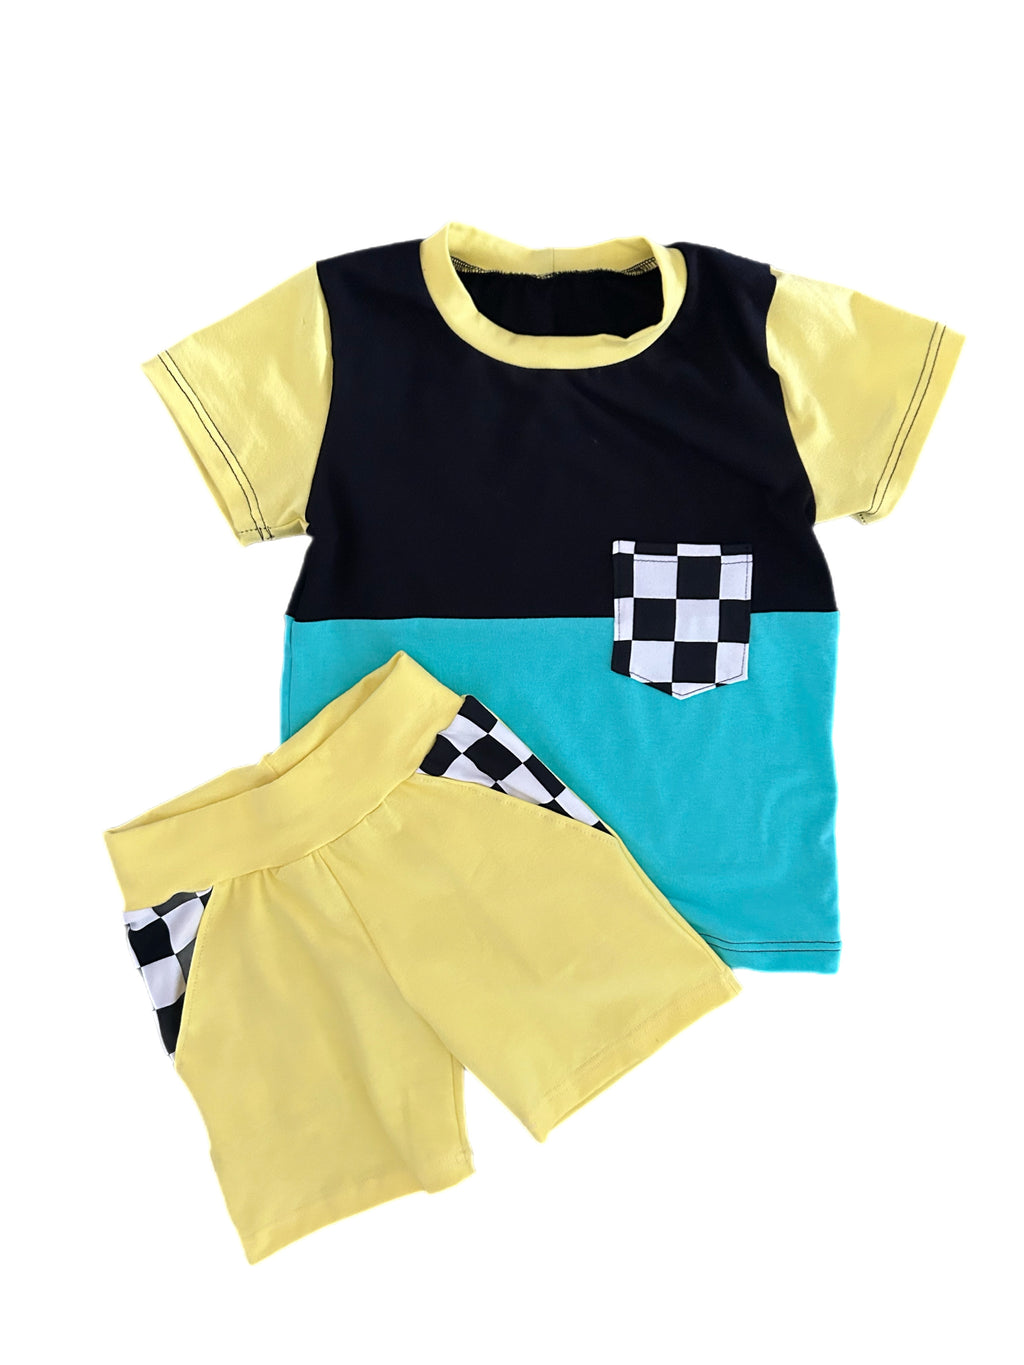 Pocket Shorts - Yellow